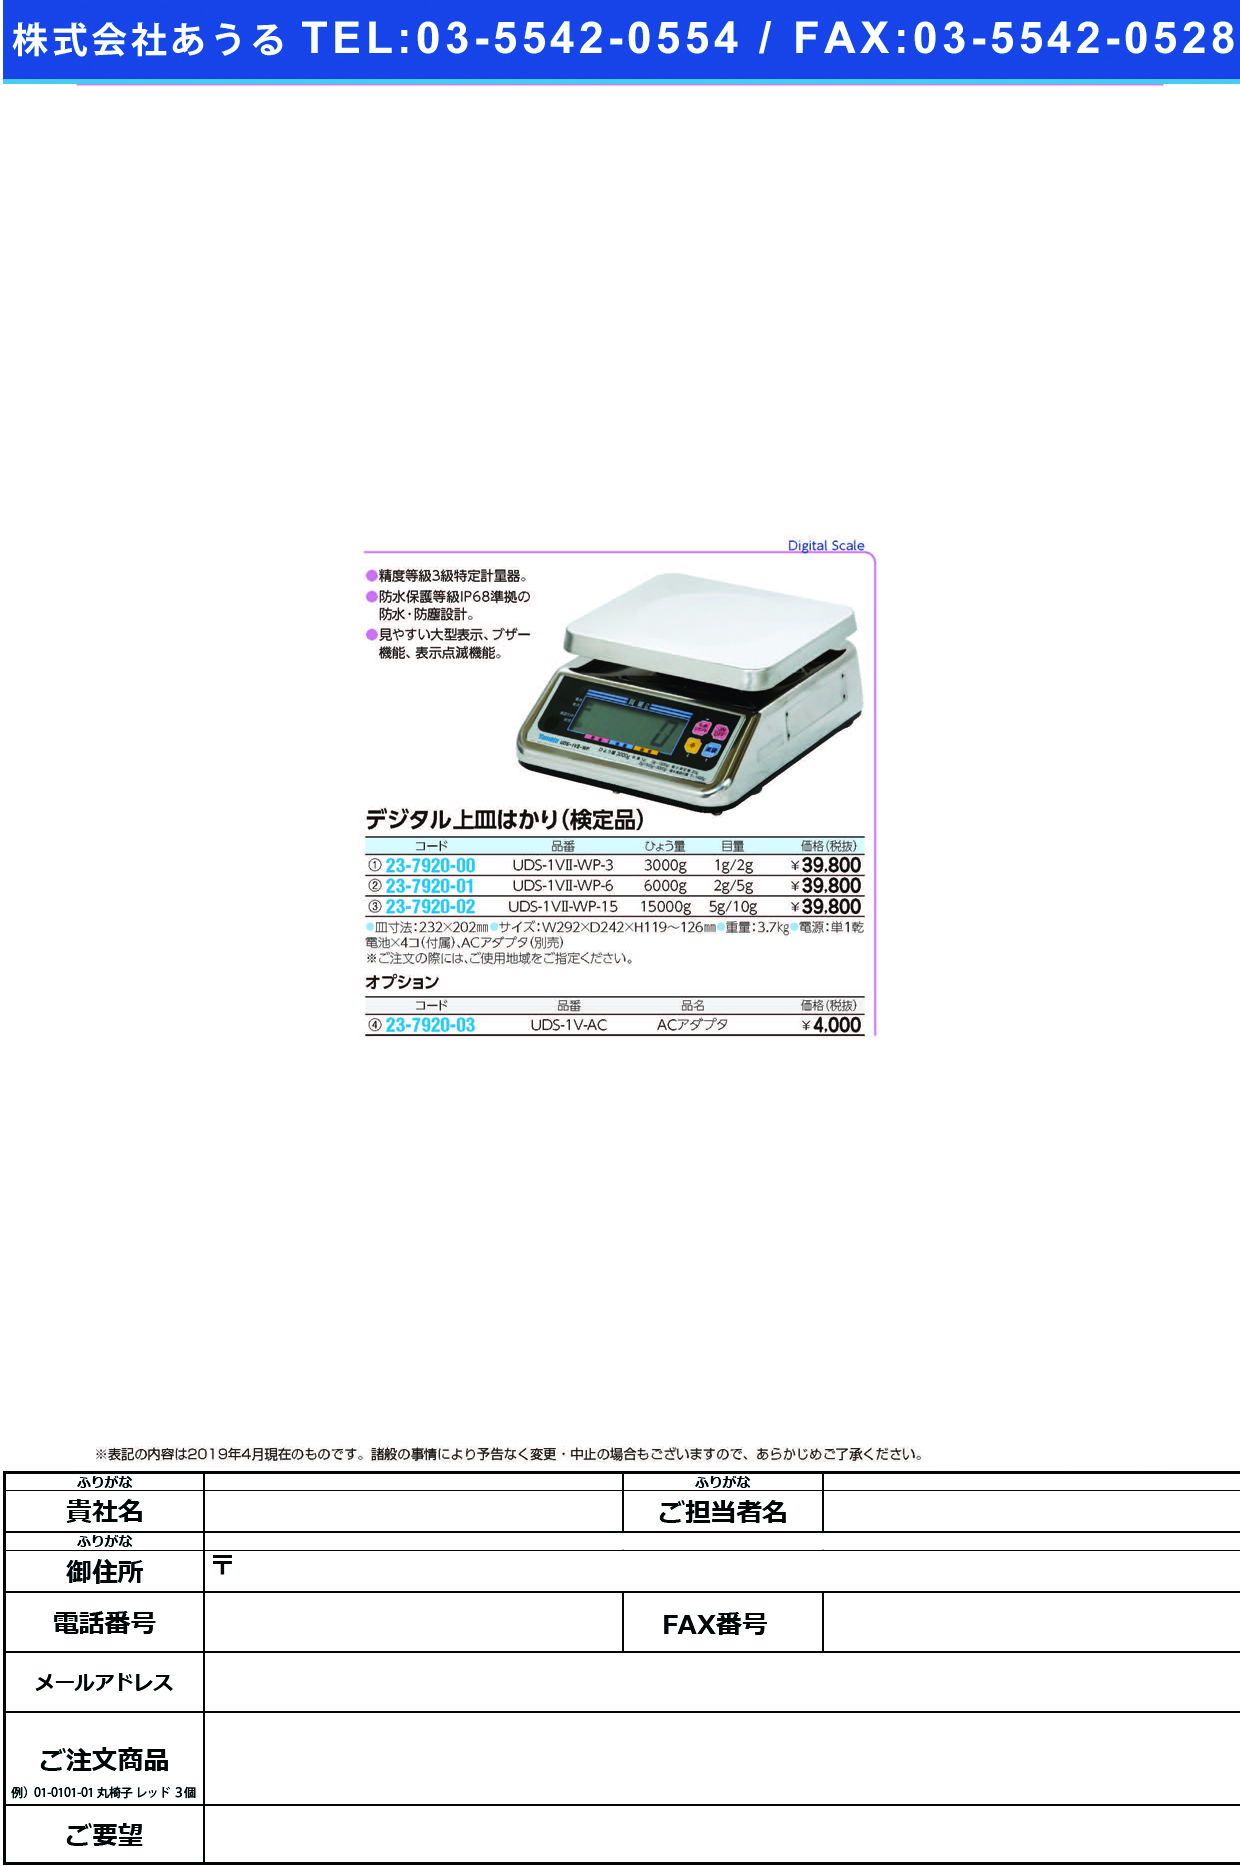 完全防水型デジタル式はかり（検定品） UDS-1V2-WP-6(6KG) ﾎﾞｳｽｲﾃﾞｼﾞﾀﾙﾊｶﾘｹﾝﾃｲﾋﾝ